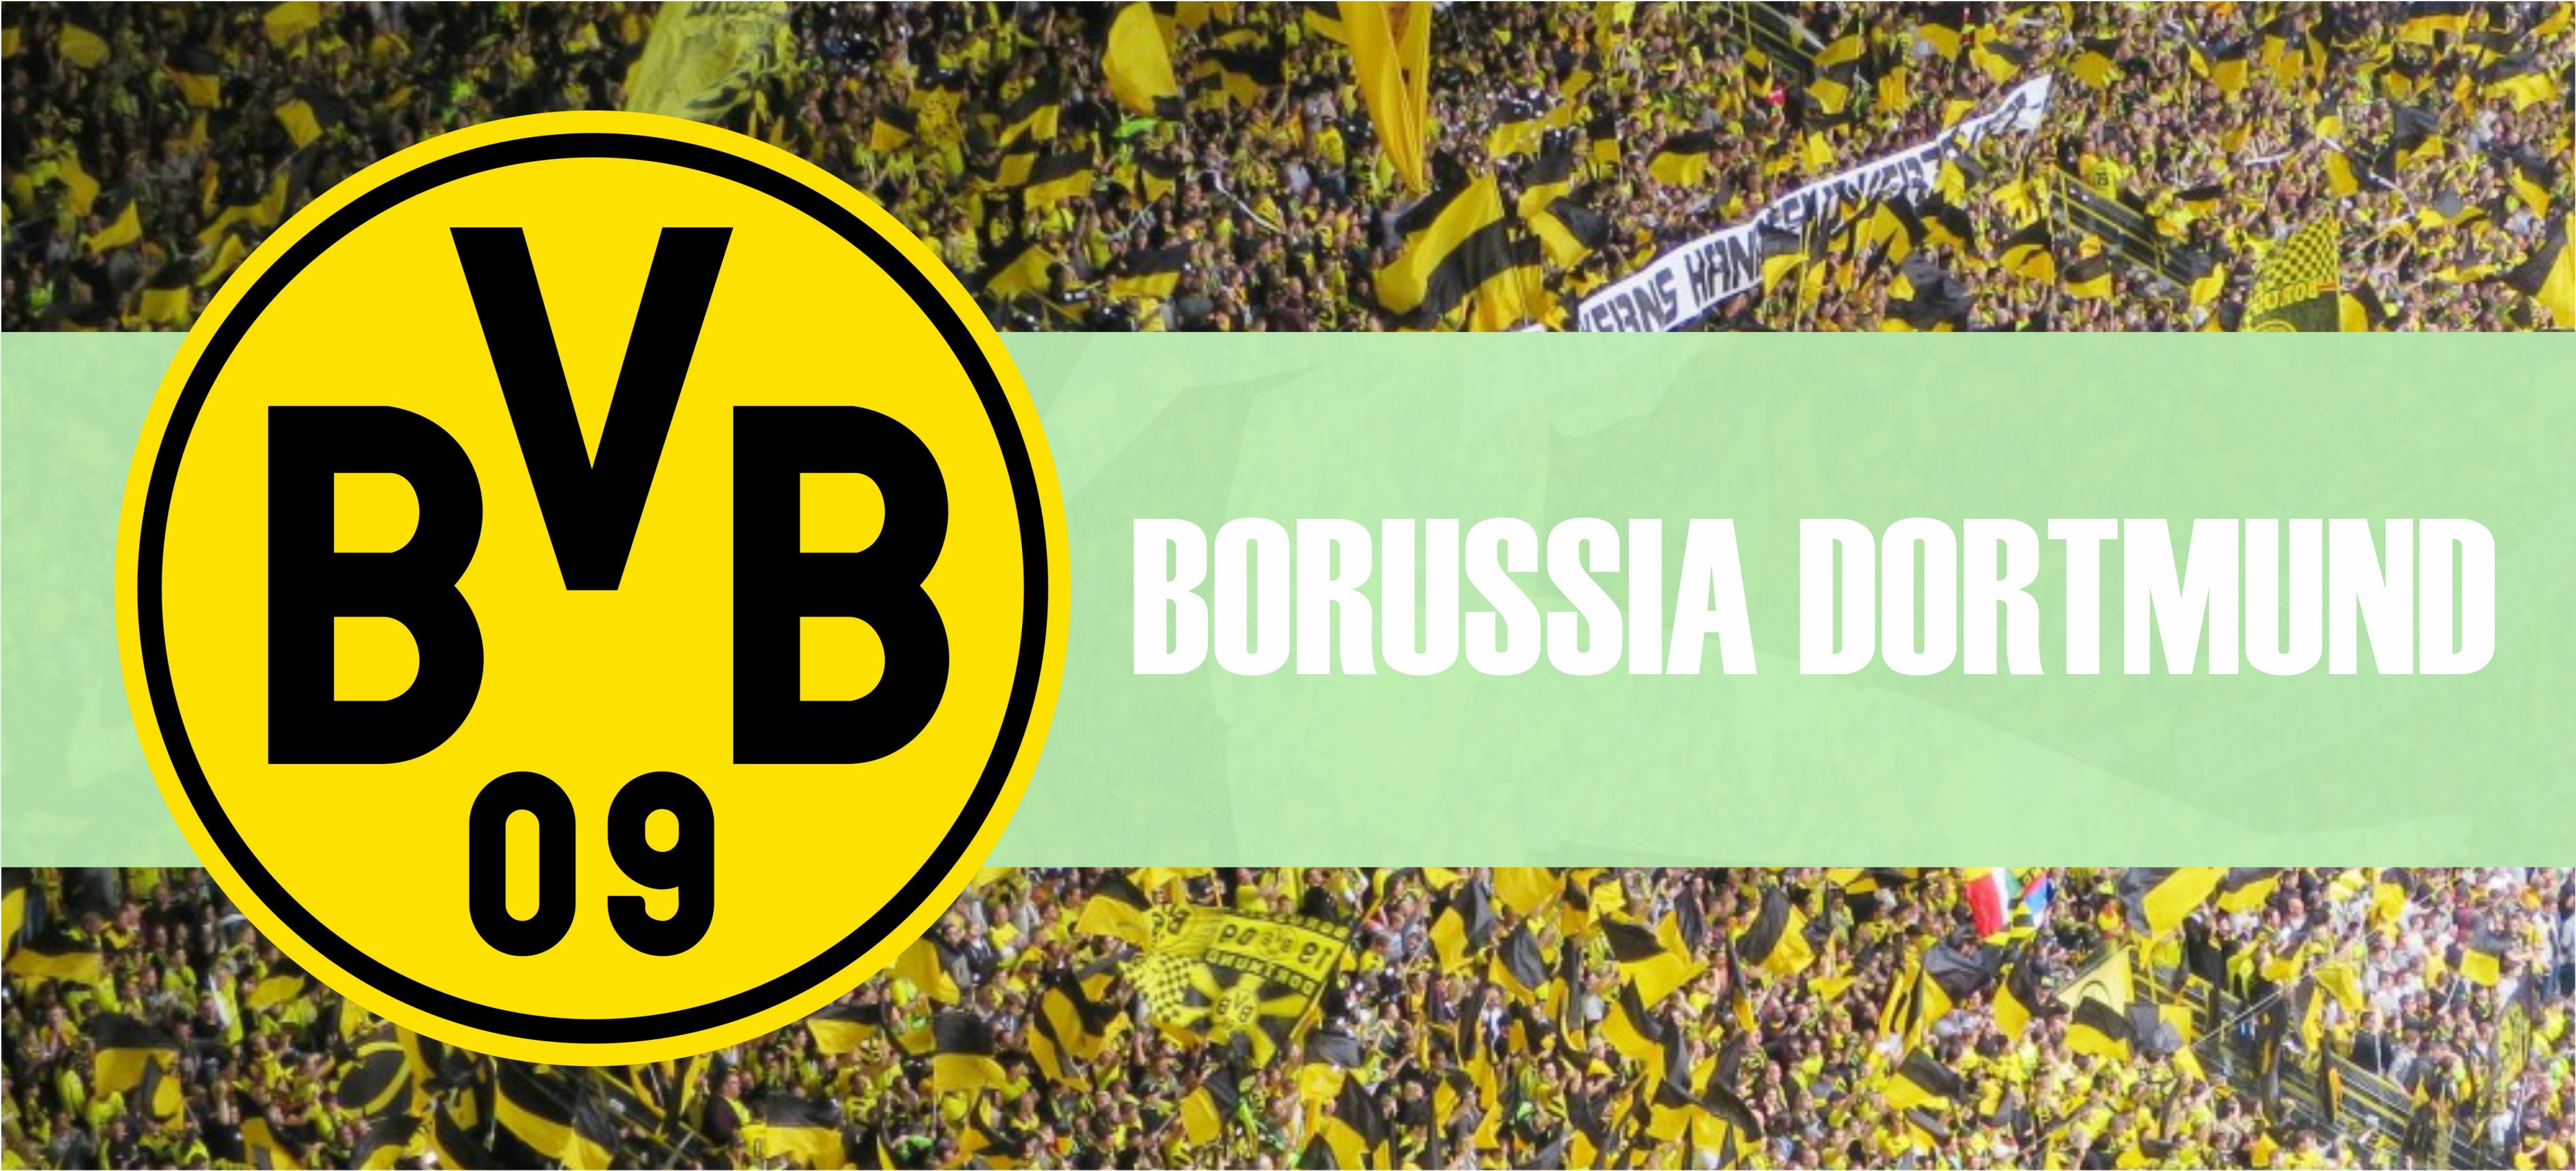 Skarb kibica Bundesligi: Borussia Dortmund w drodze po tytuły